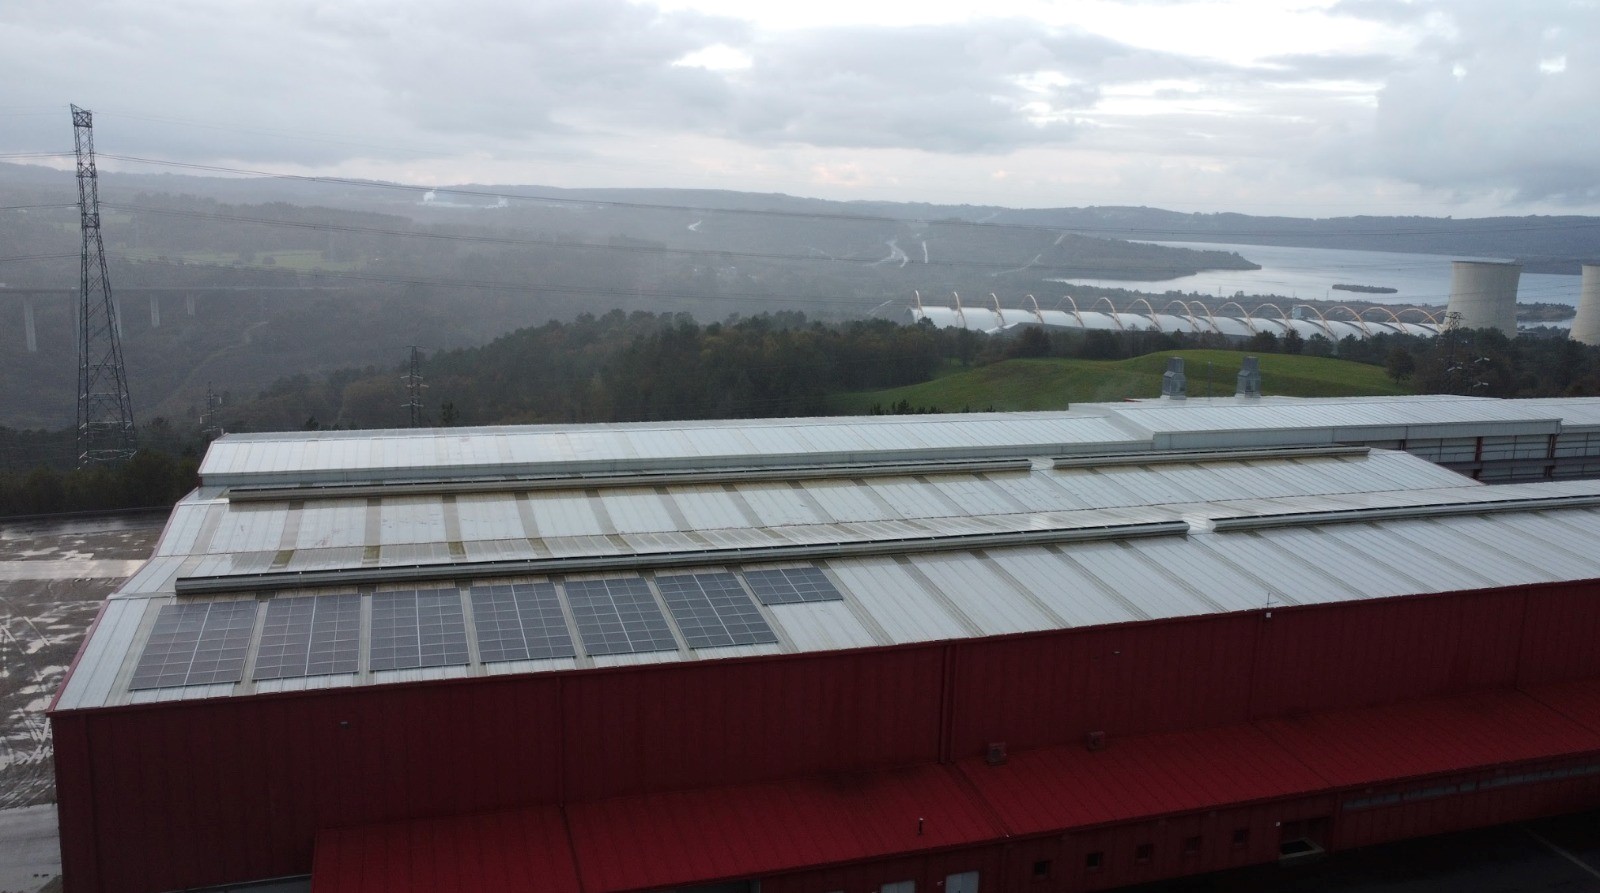 Proyecto de autoconsumo fotovoltaico de 50.1 kWp en As Pontes